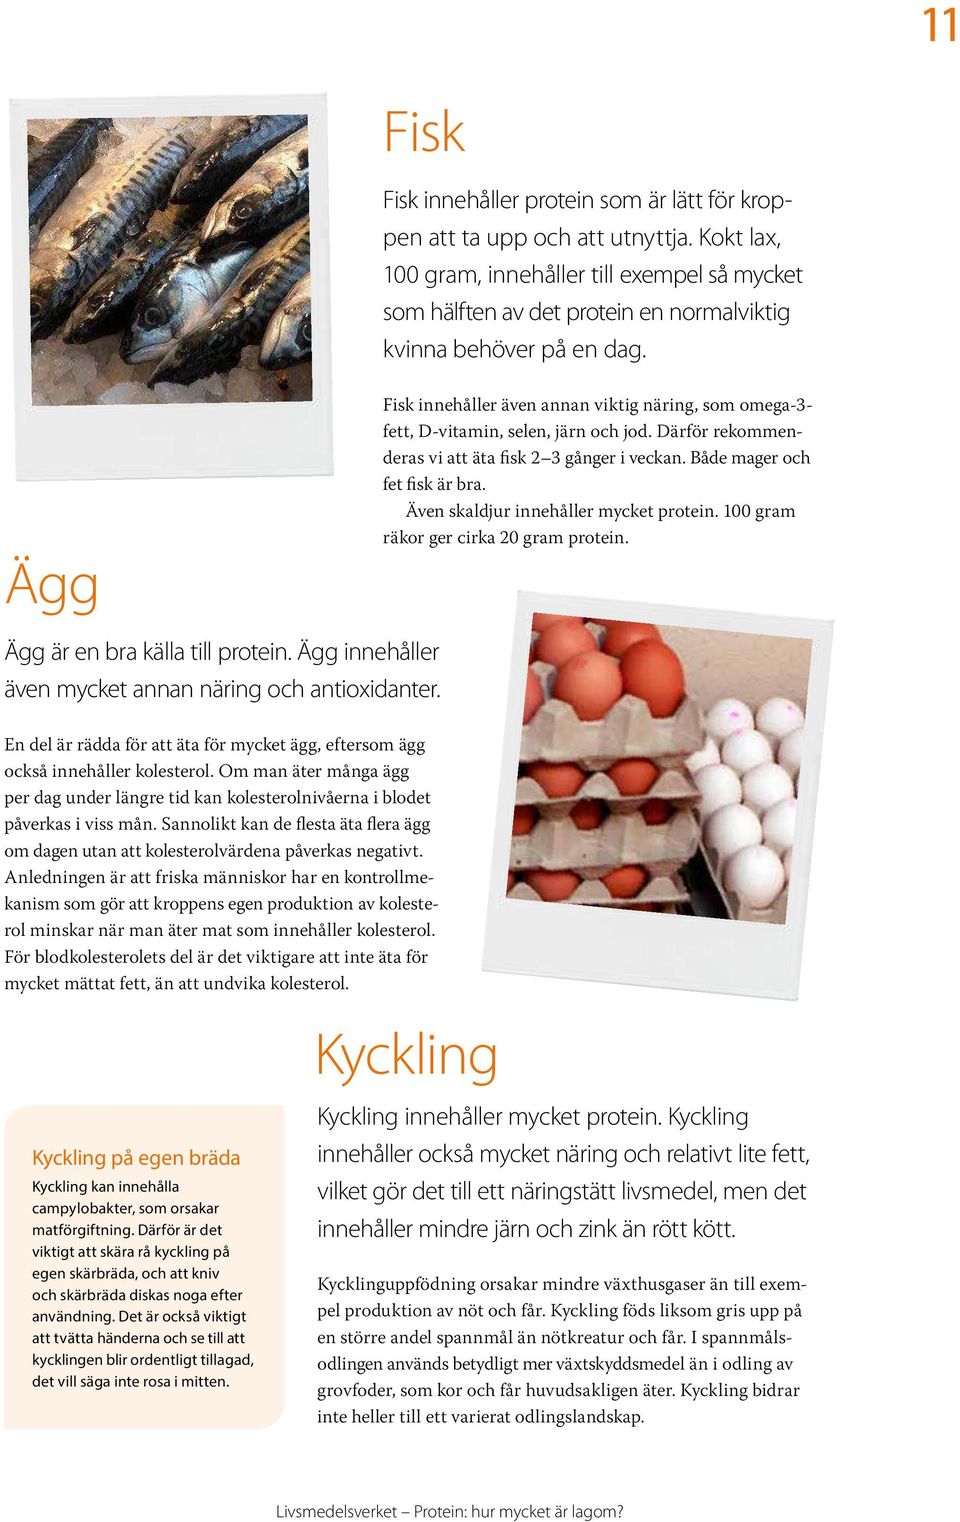 Protein hur mycket är lagom? - PDF Free Download